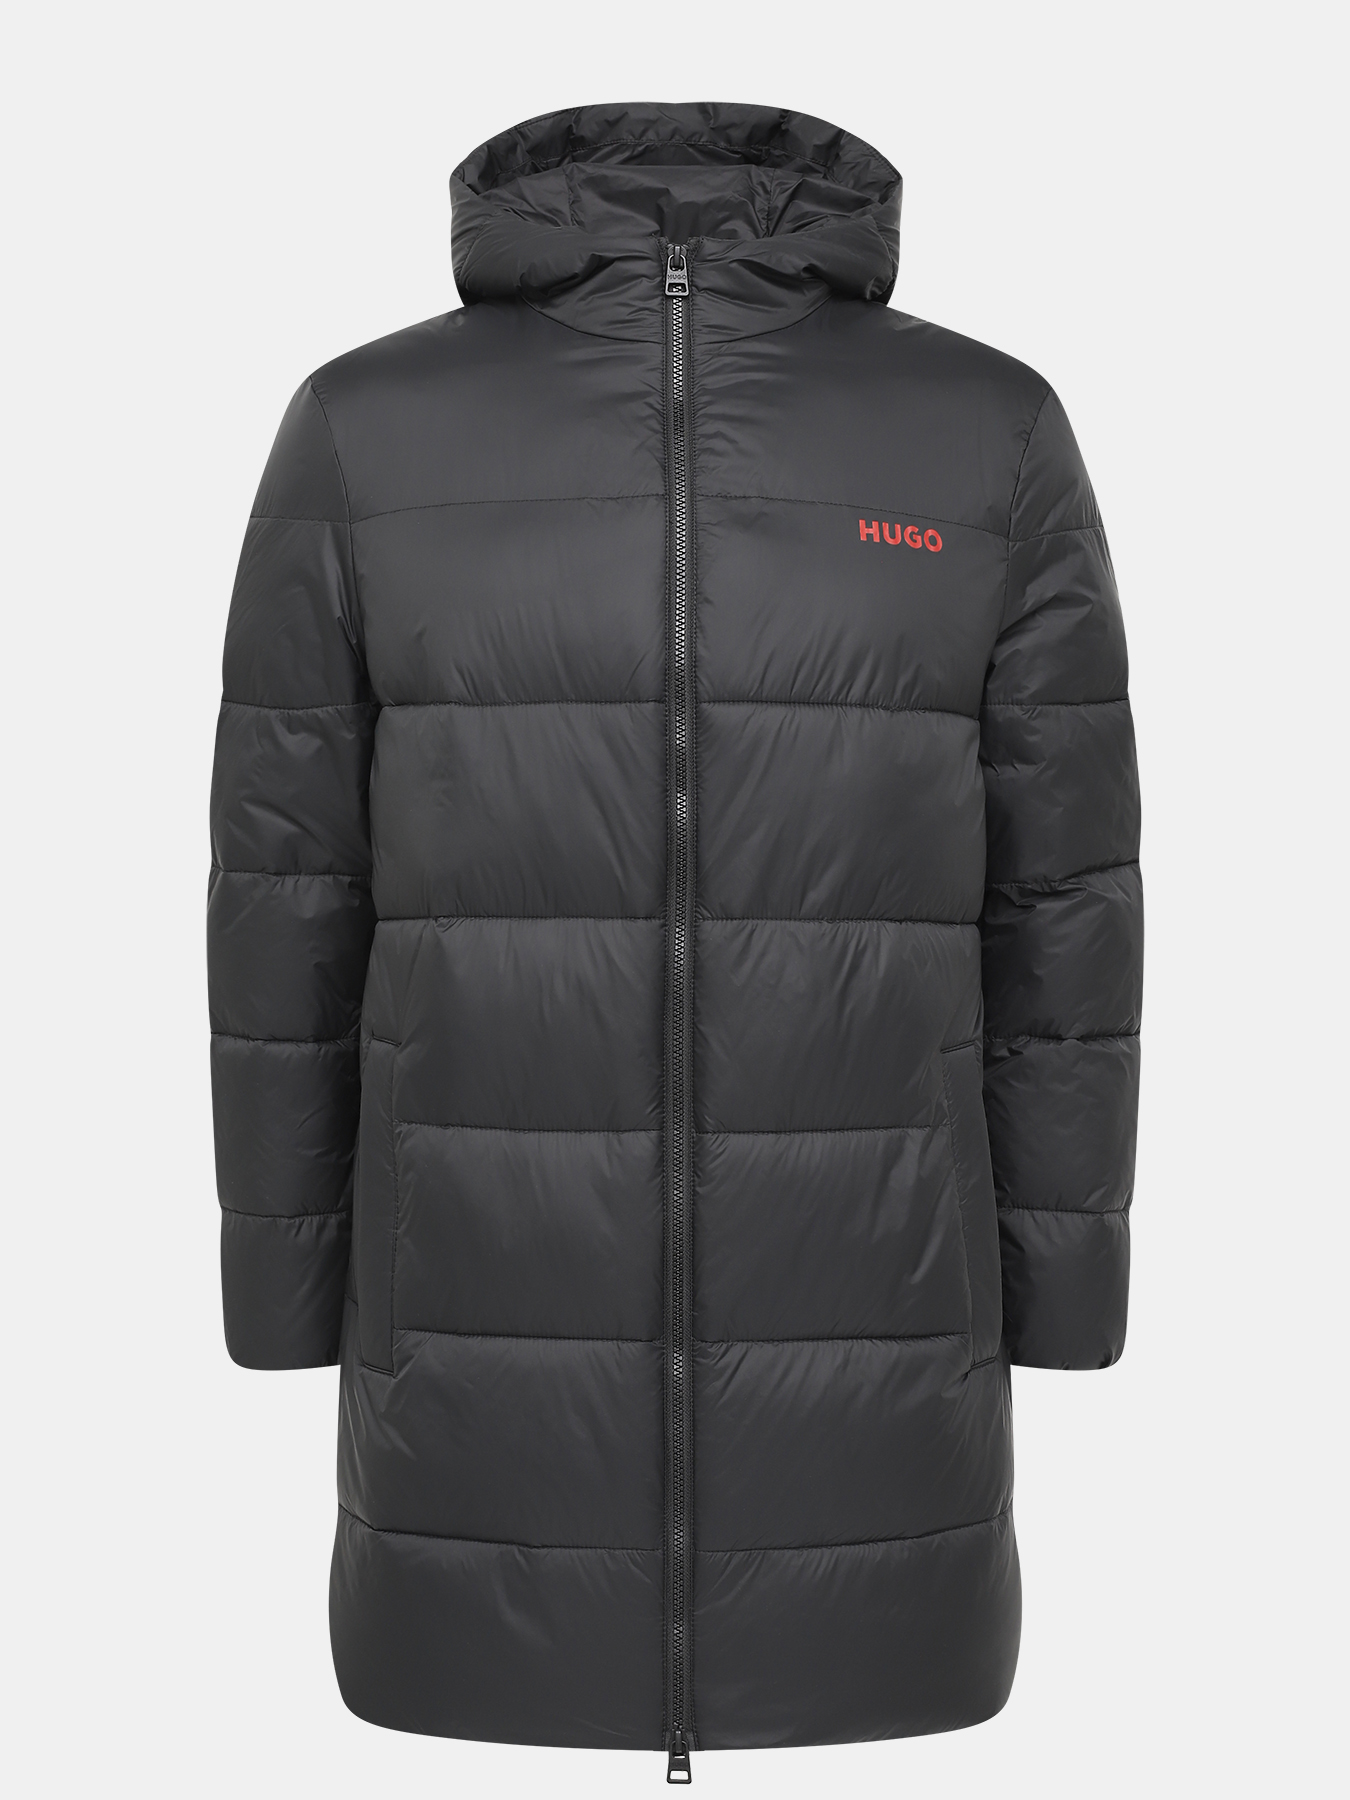 Удлиненная куртка Mati HUGO 426043-044, цвет черный, размер 50-52 - фото 1